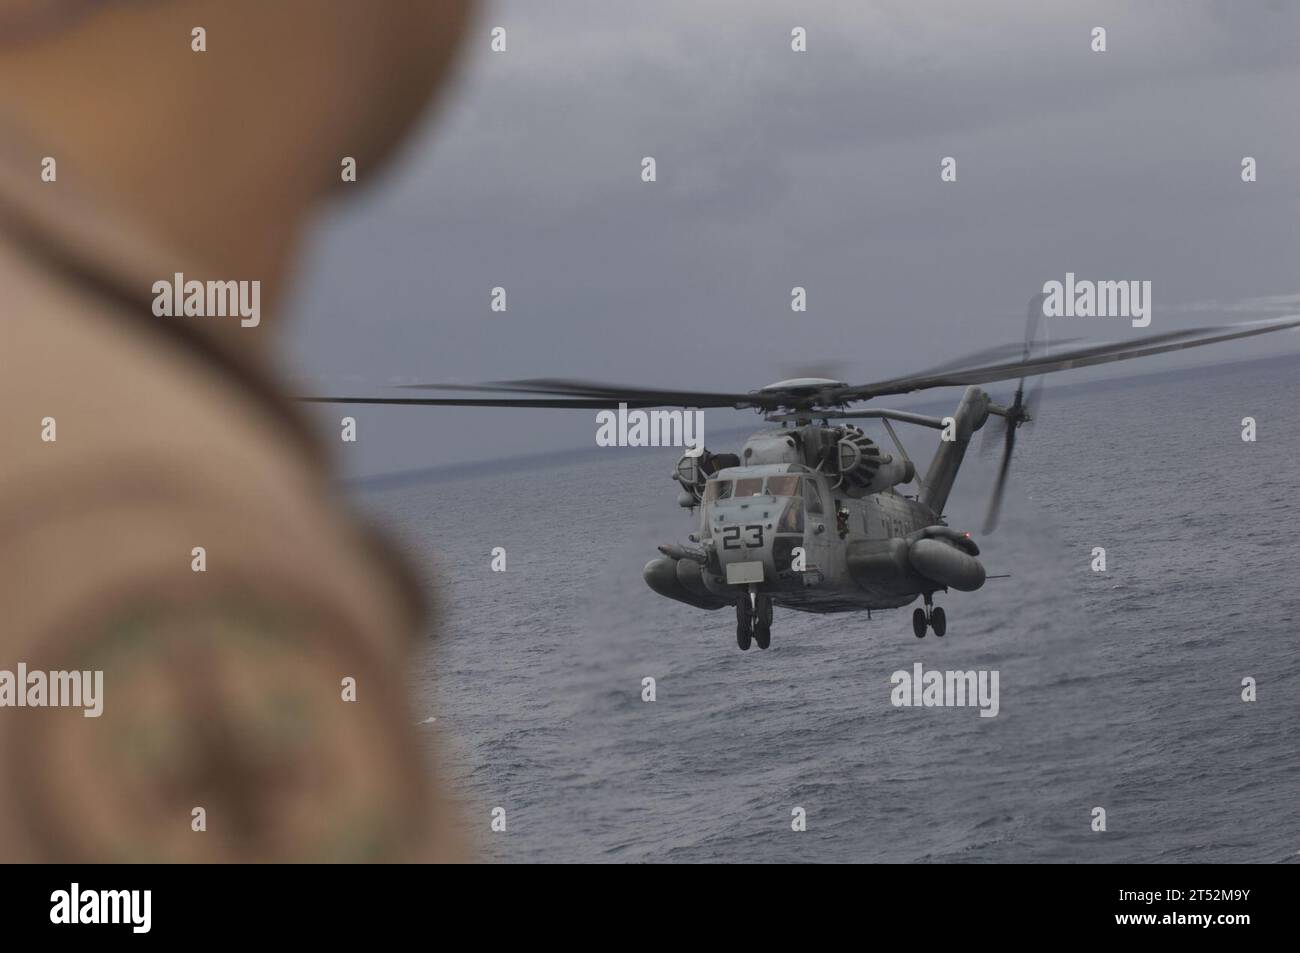 0910265700G-040 ATLANTISCHER OZEAN (26. Oktober 2009) Ein Pilot der Navy beobachtet die Landung eines MH-53 Sea Dragon Helikopters an Bord des amphibischen Angriffsschiffs USS Nassau (LHA 4). Die Piloten führten während der dreiwöchigen Trainingsübung für Composite Unit (COMTUEX) eine Touch-and-Go-Landungsqualifikation durch. COMPTUEX wurde entwickelt, um realistische Trainingsumgebungen für US-Marine-Streitkräfte bereitzustellen, die die operativen Herausforderungen, die bei militärischen Operationen weltweit üblich sind, genau nachbilden. Marineblau Stockfoto